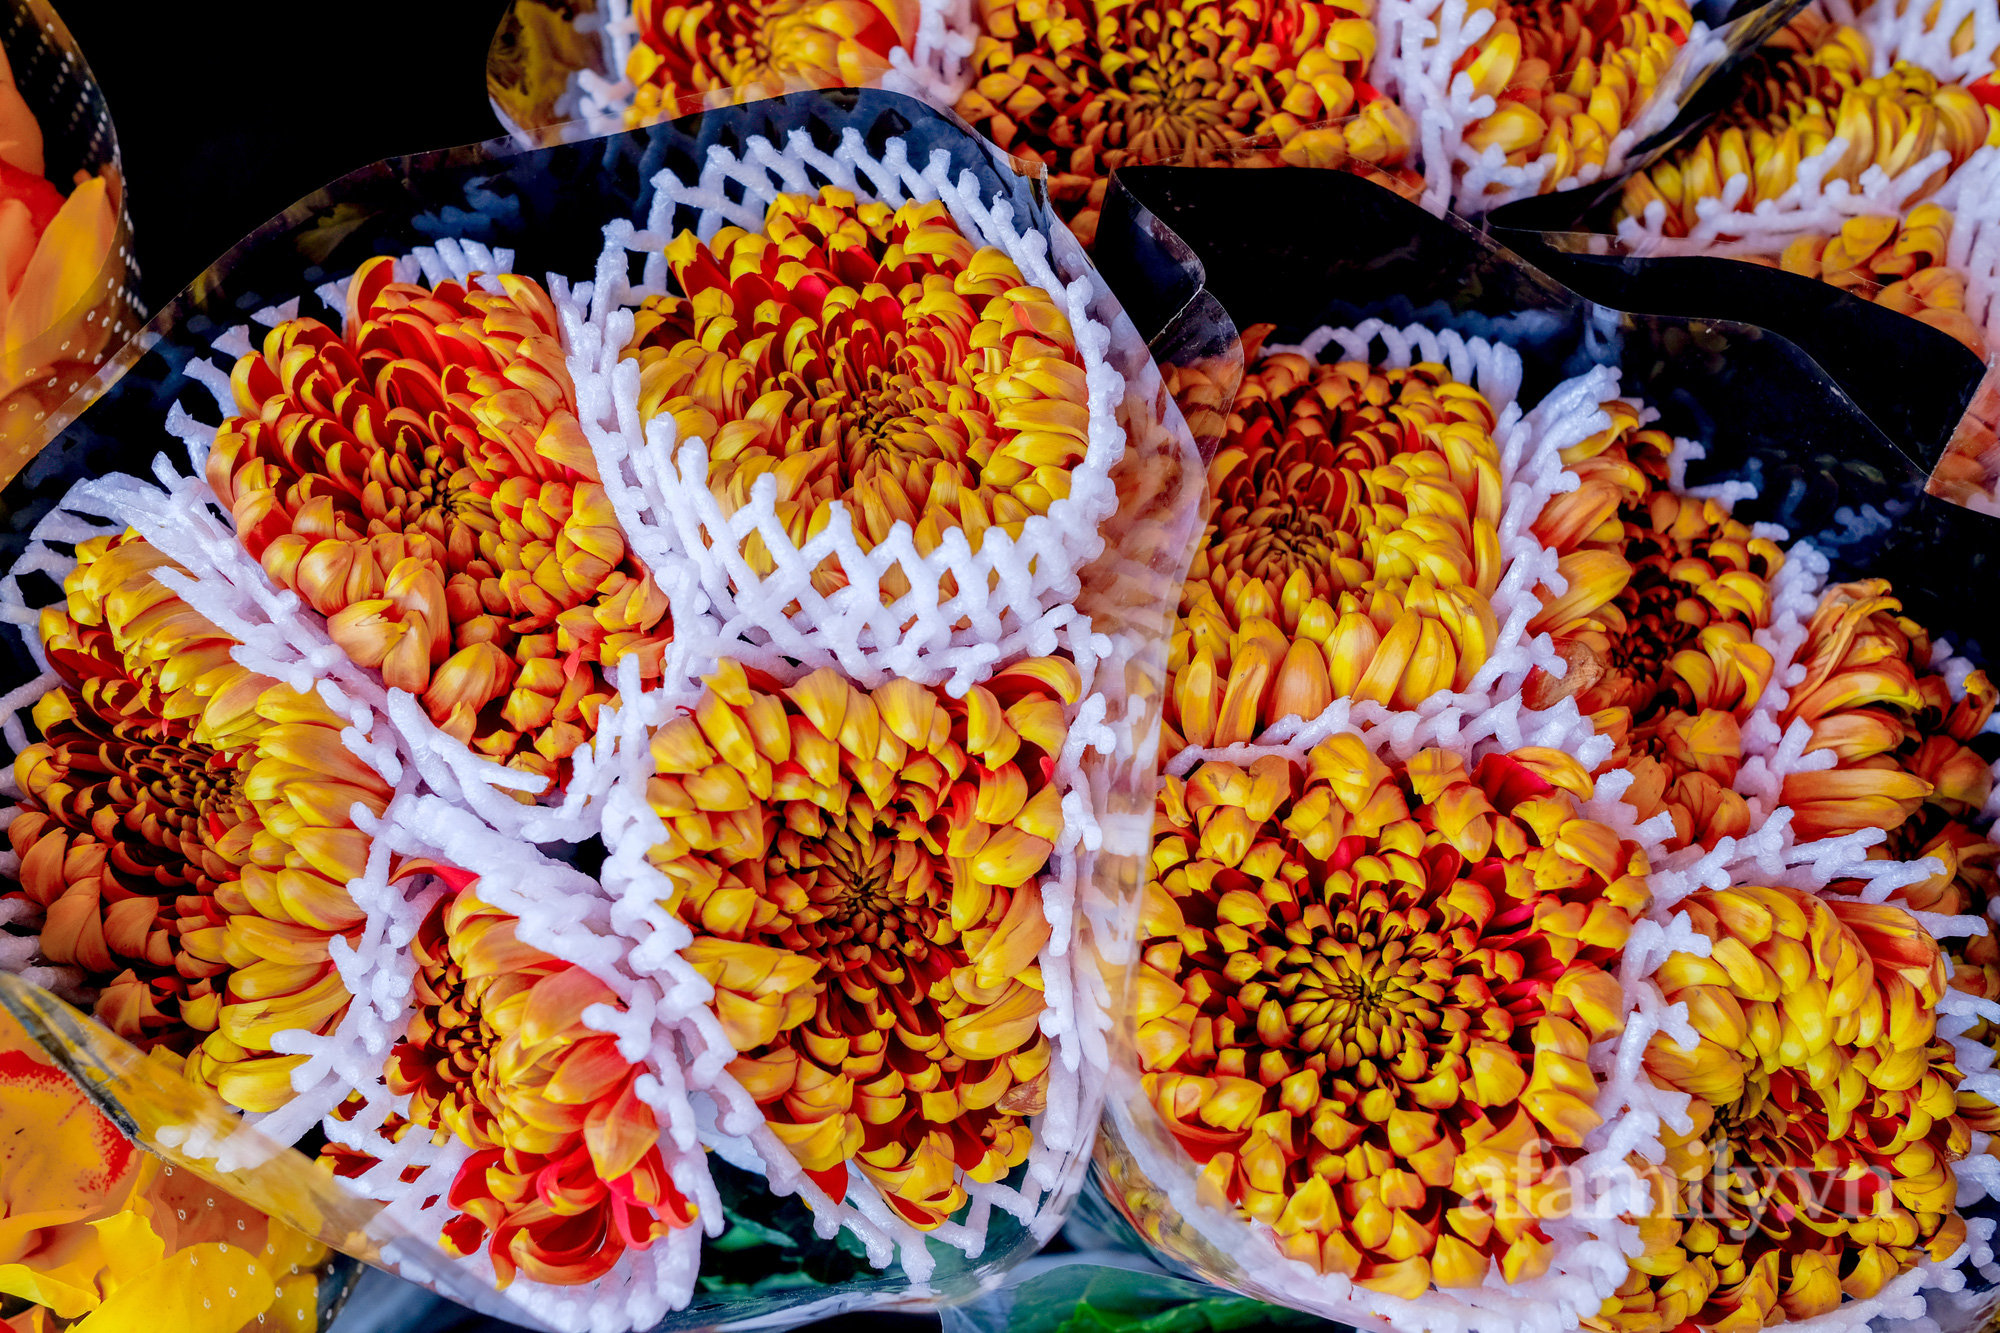 29 Tết đi chợ hoa Quảng Bá: Giá hoa tăng 20% so với ngày thường, mua nhanh 5 cành đào đông cắm đẹp nhà mà hết 2,2 triệu - Ảnh 5.